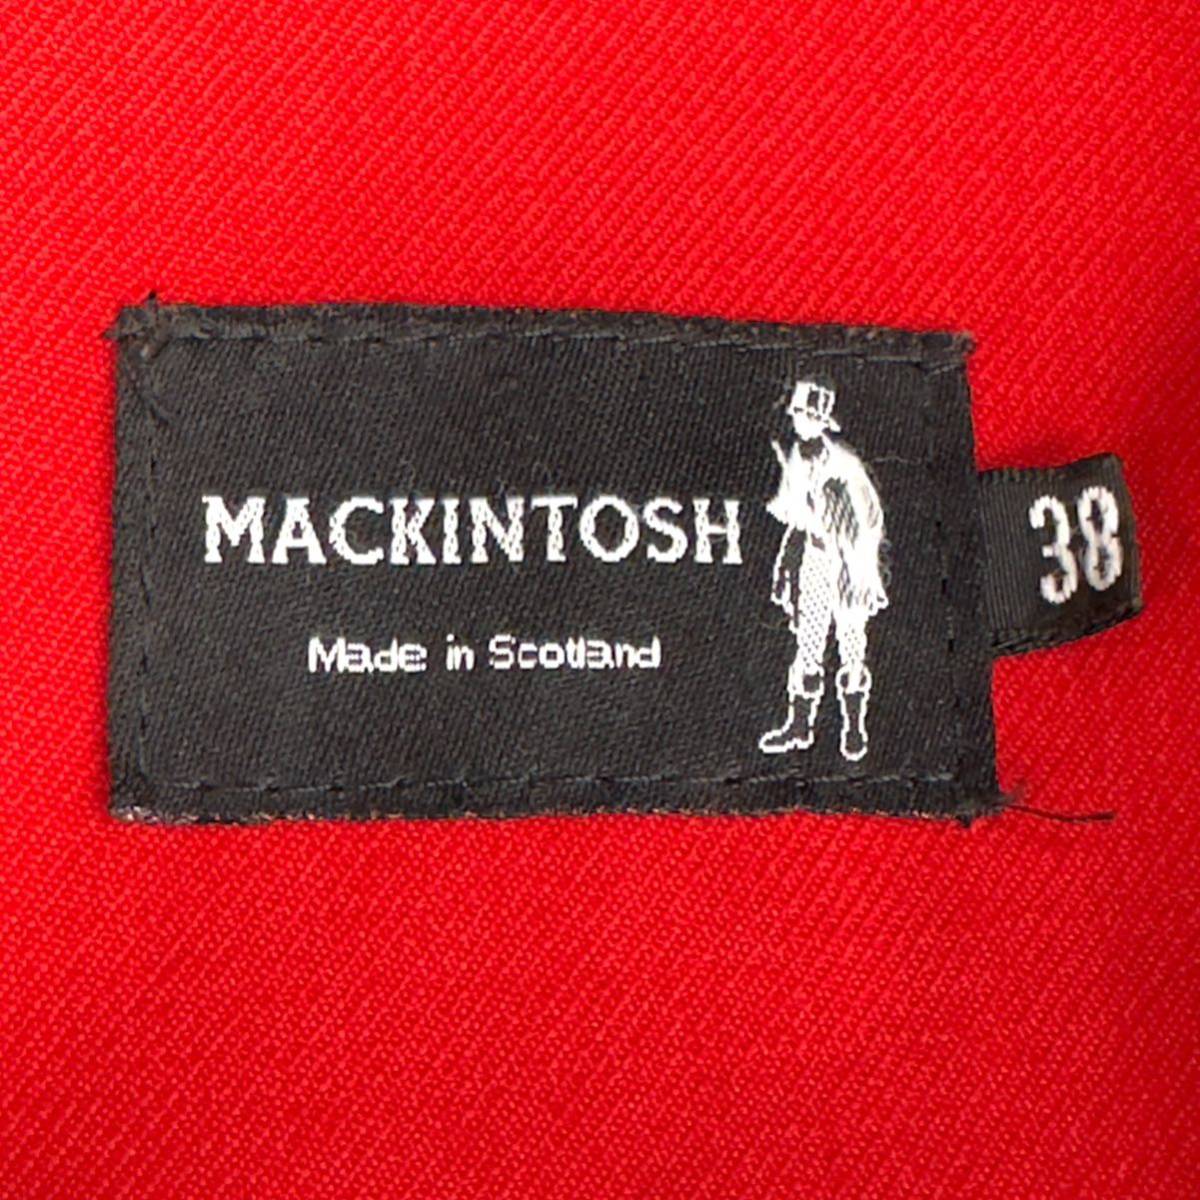 マッキントッシュ 【鮮烈な赤色裏地】 Mackintosh キルティングコート ジャケット 38 Mサイズ 裏地ウール100% スコットランド製 軽量感◎_画像8